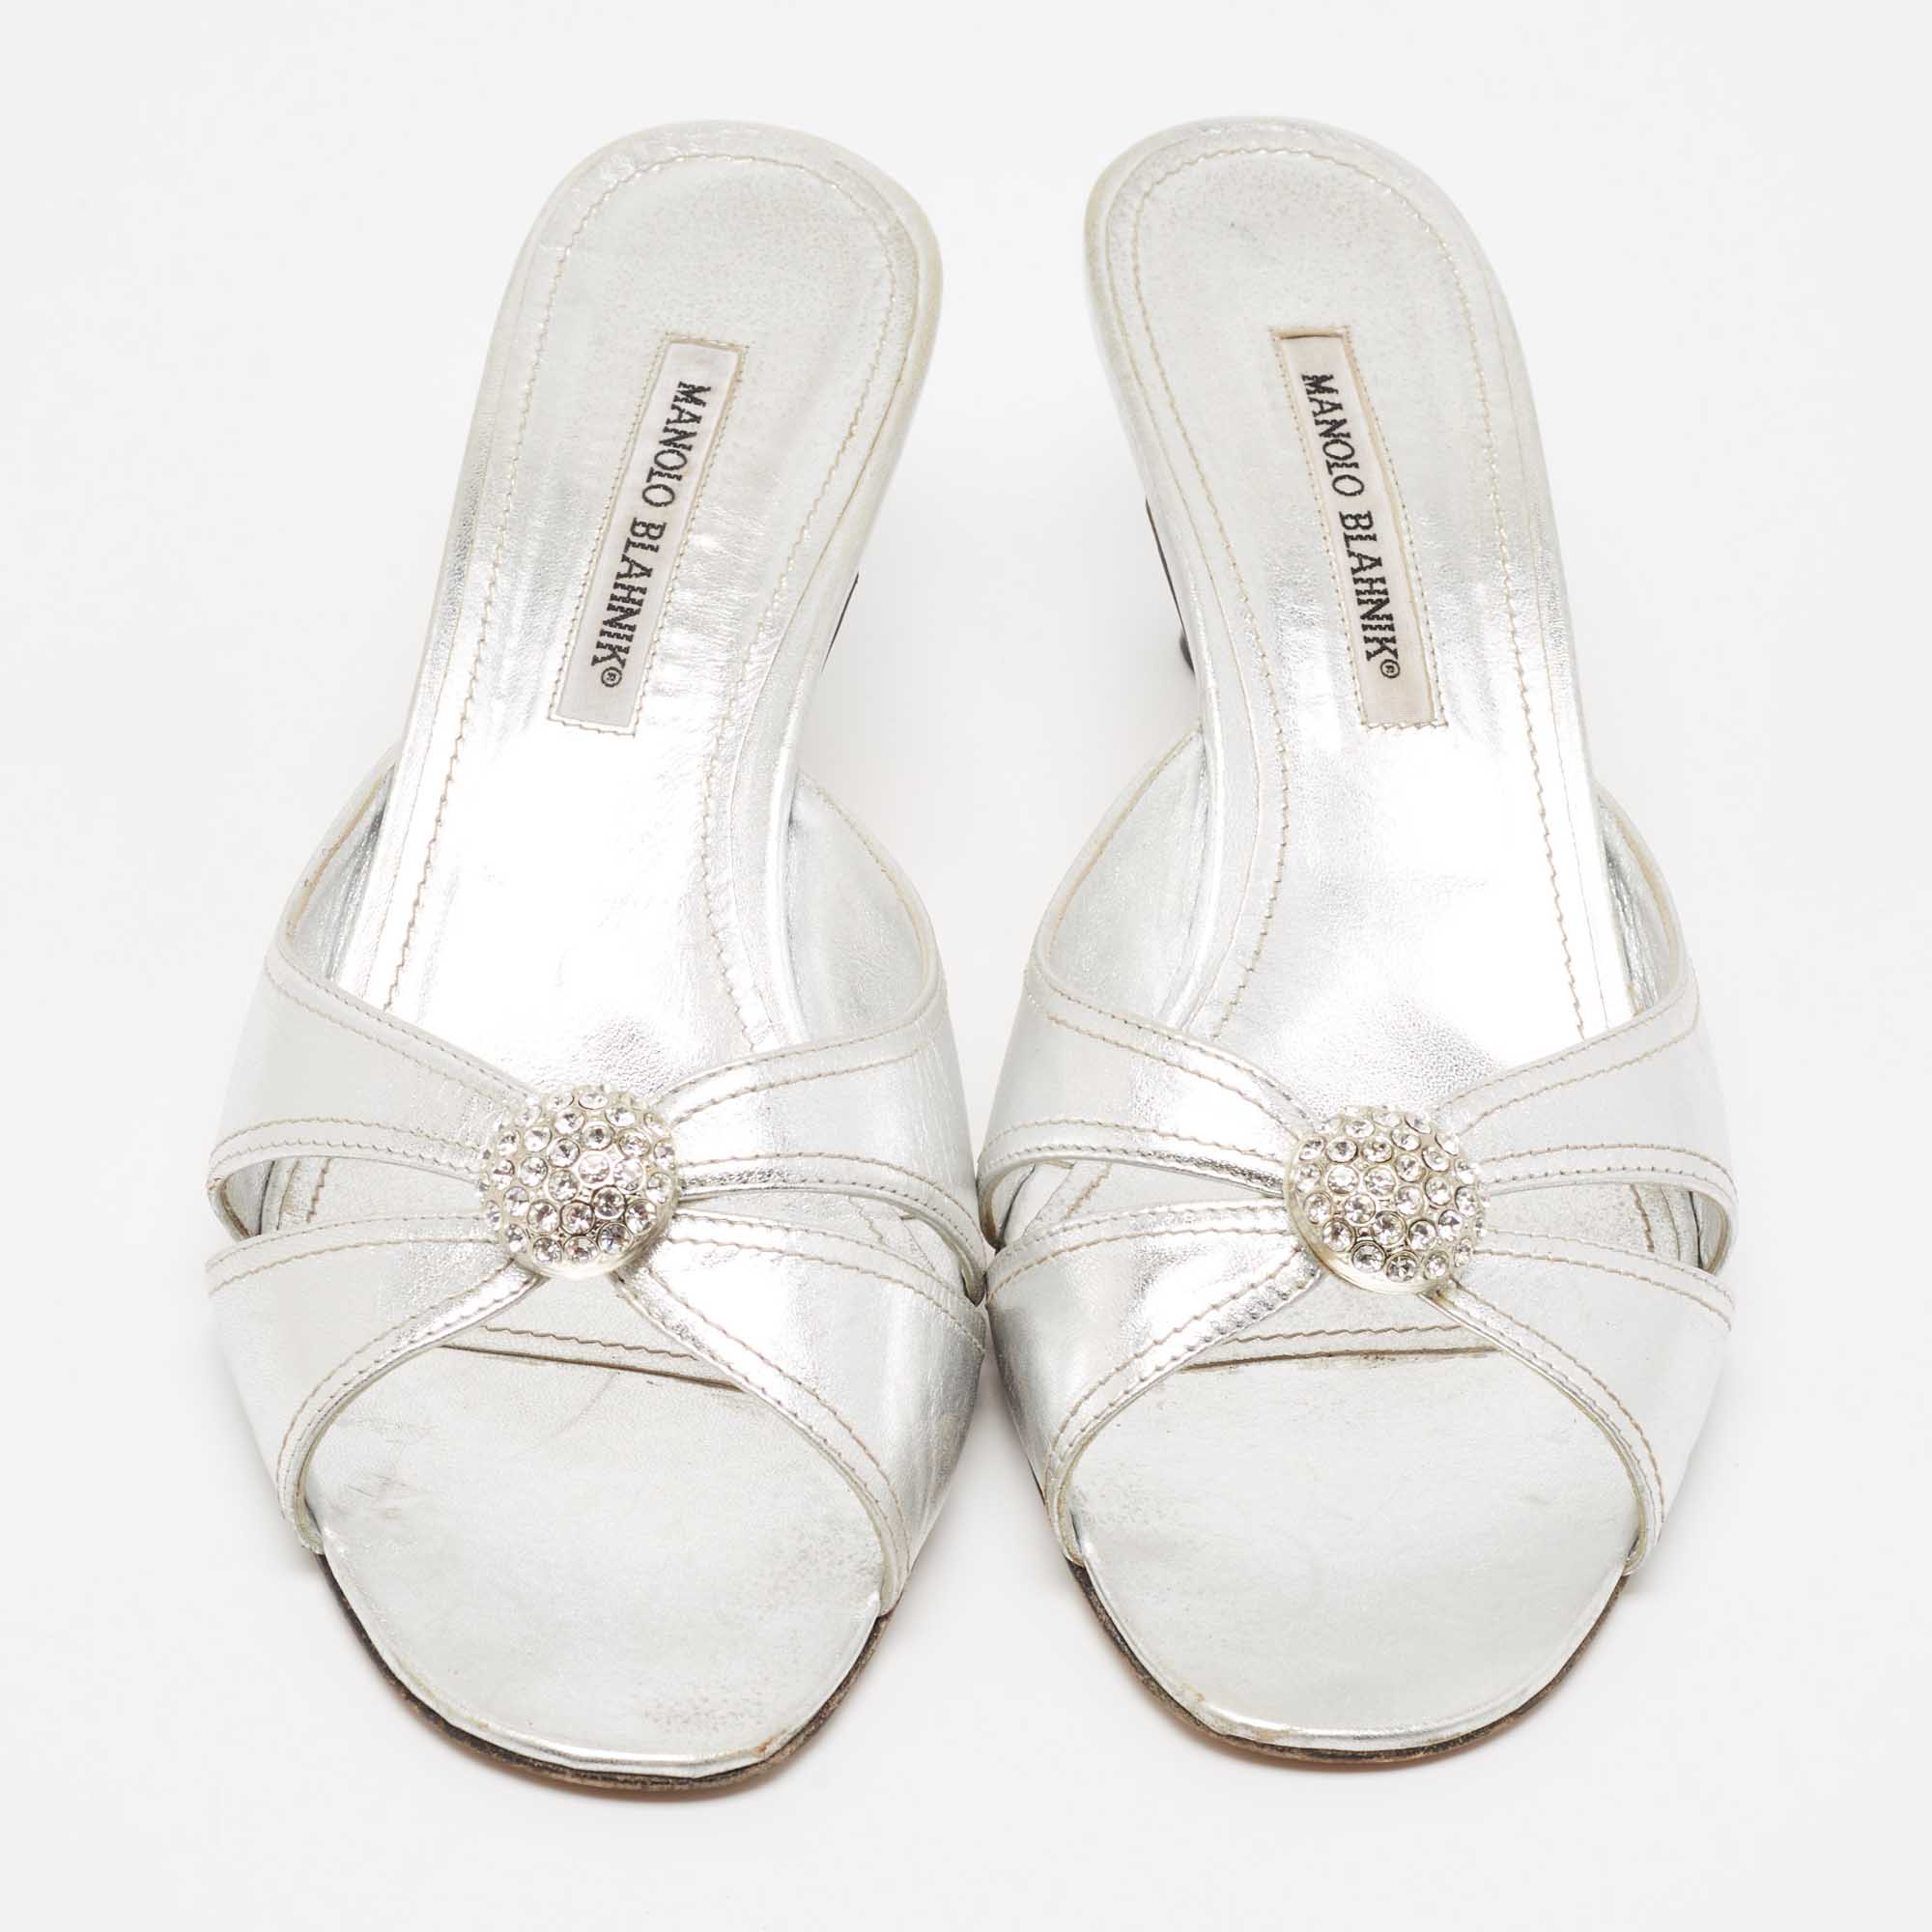 Manolo Blahnik Metallic Silver Leather Crystal Embellished Slide Sandals Size 42